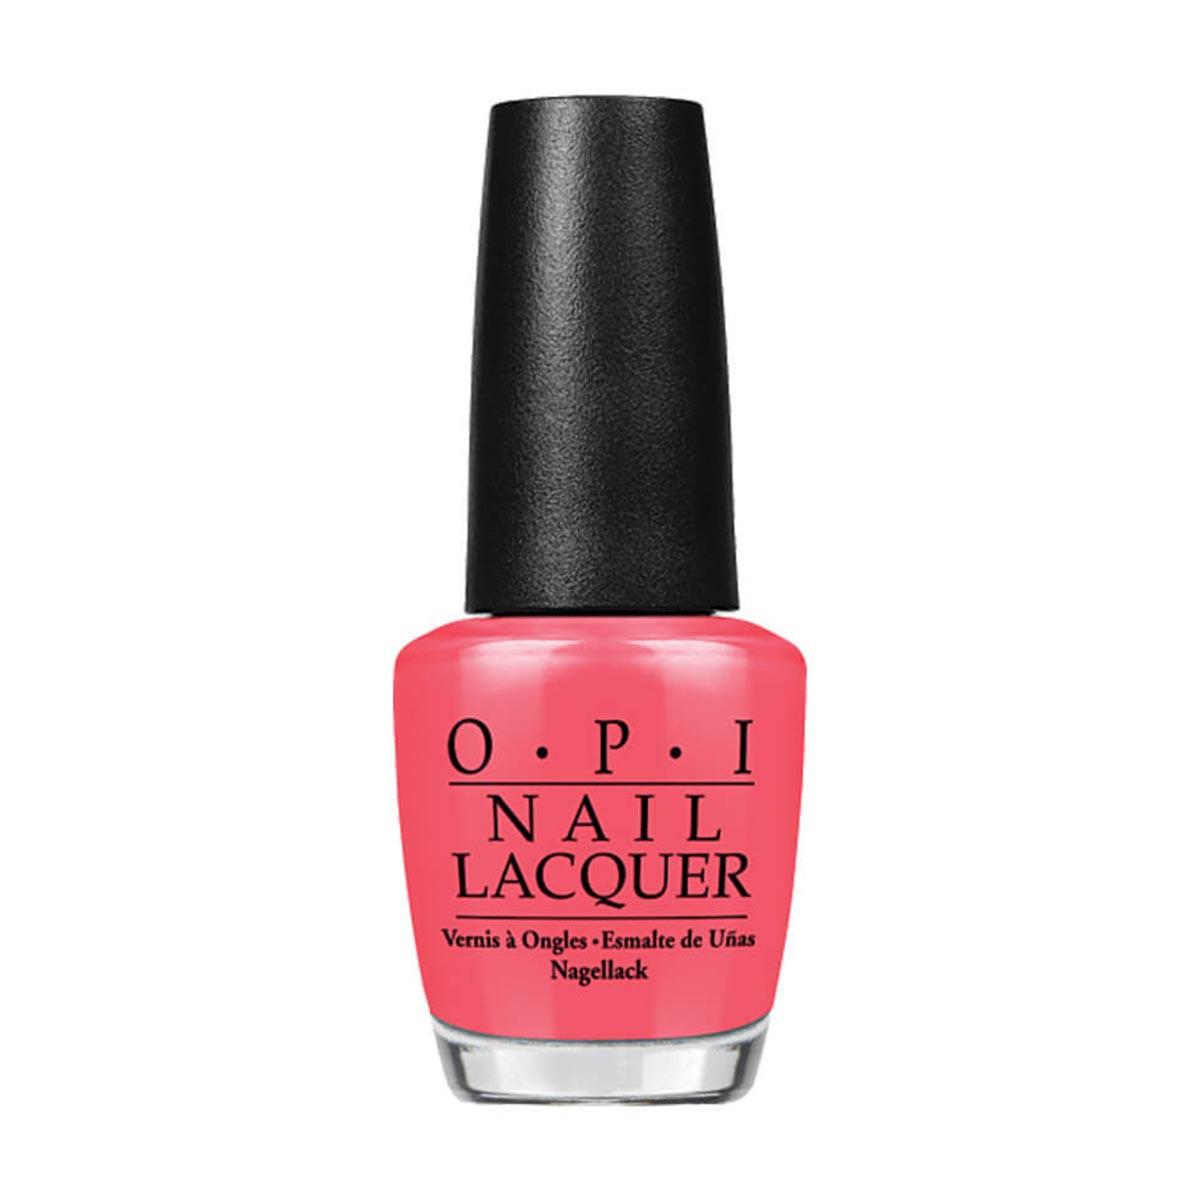 opi-nail-lacquer-nlb65-modern-girl